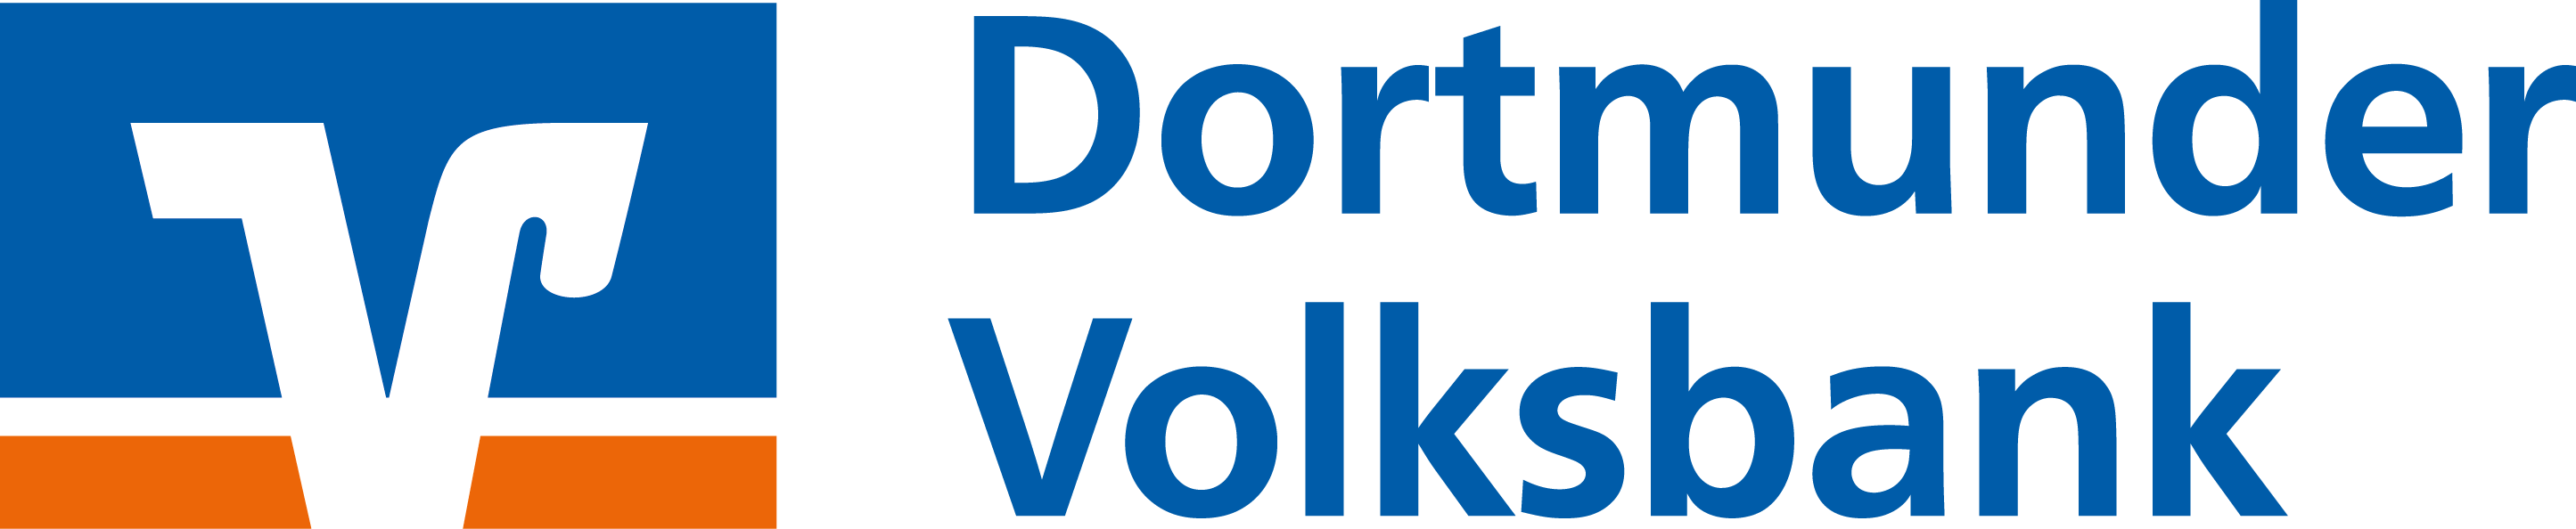 Logo_Dortmunder Volksbank 5cm hoch_links_4c.png